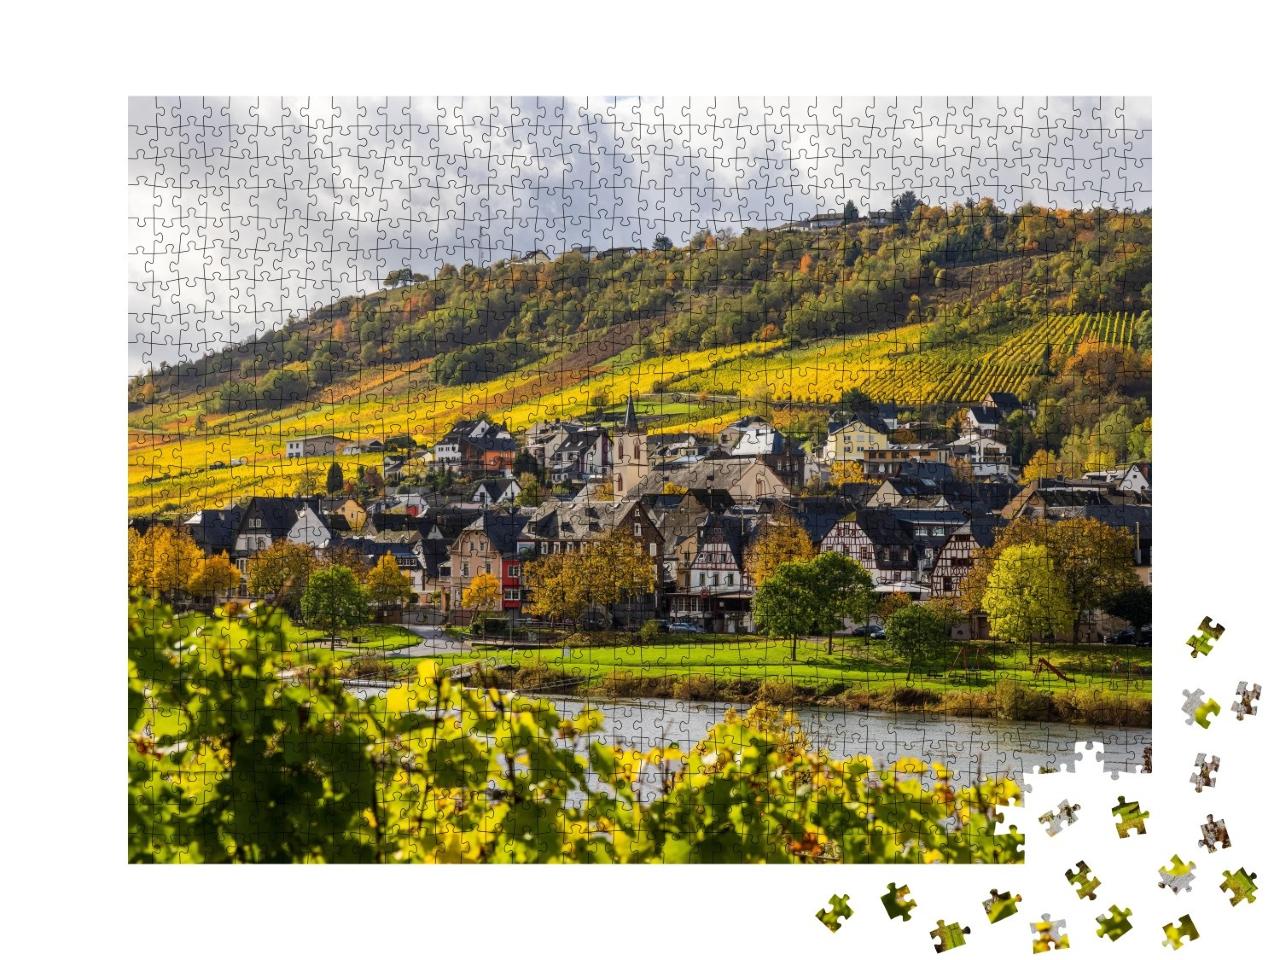 Puzzle de 1000 pièces « Paysage mosellan et vignobles aux couleurs dorées de l'automne, Allemagne »